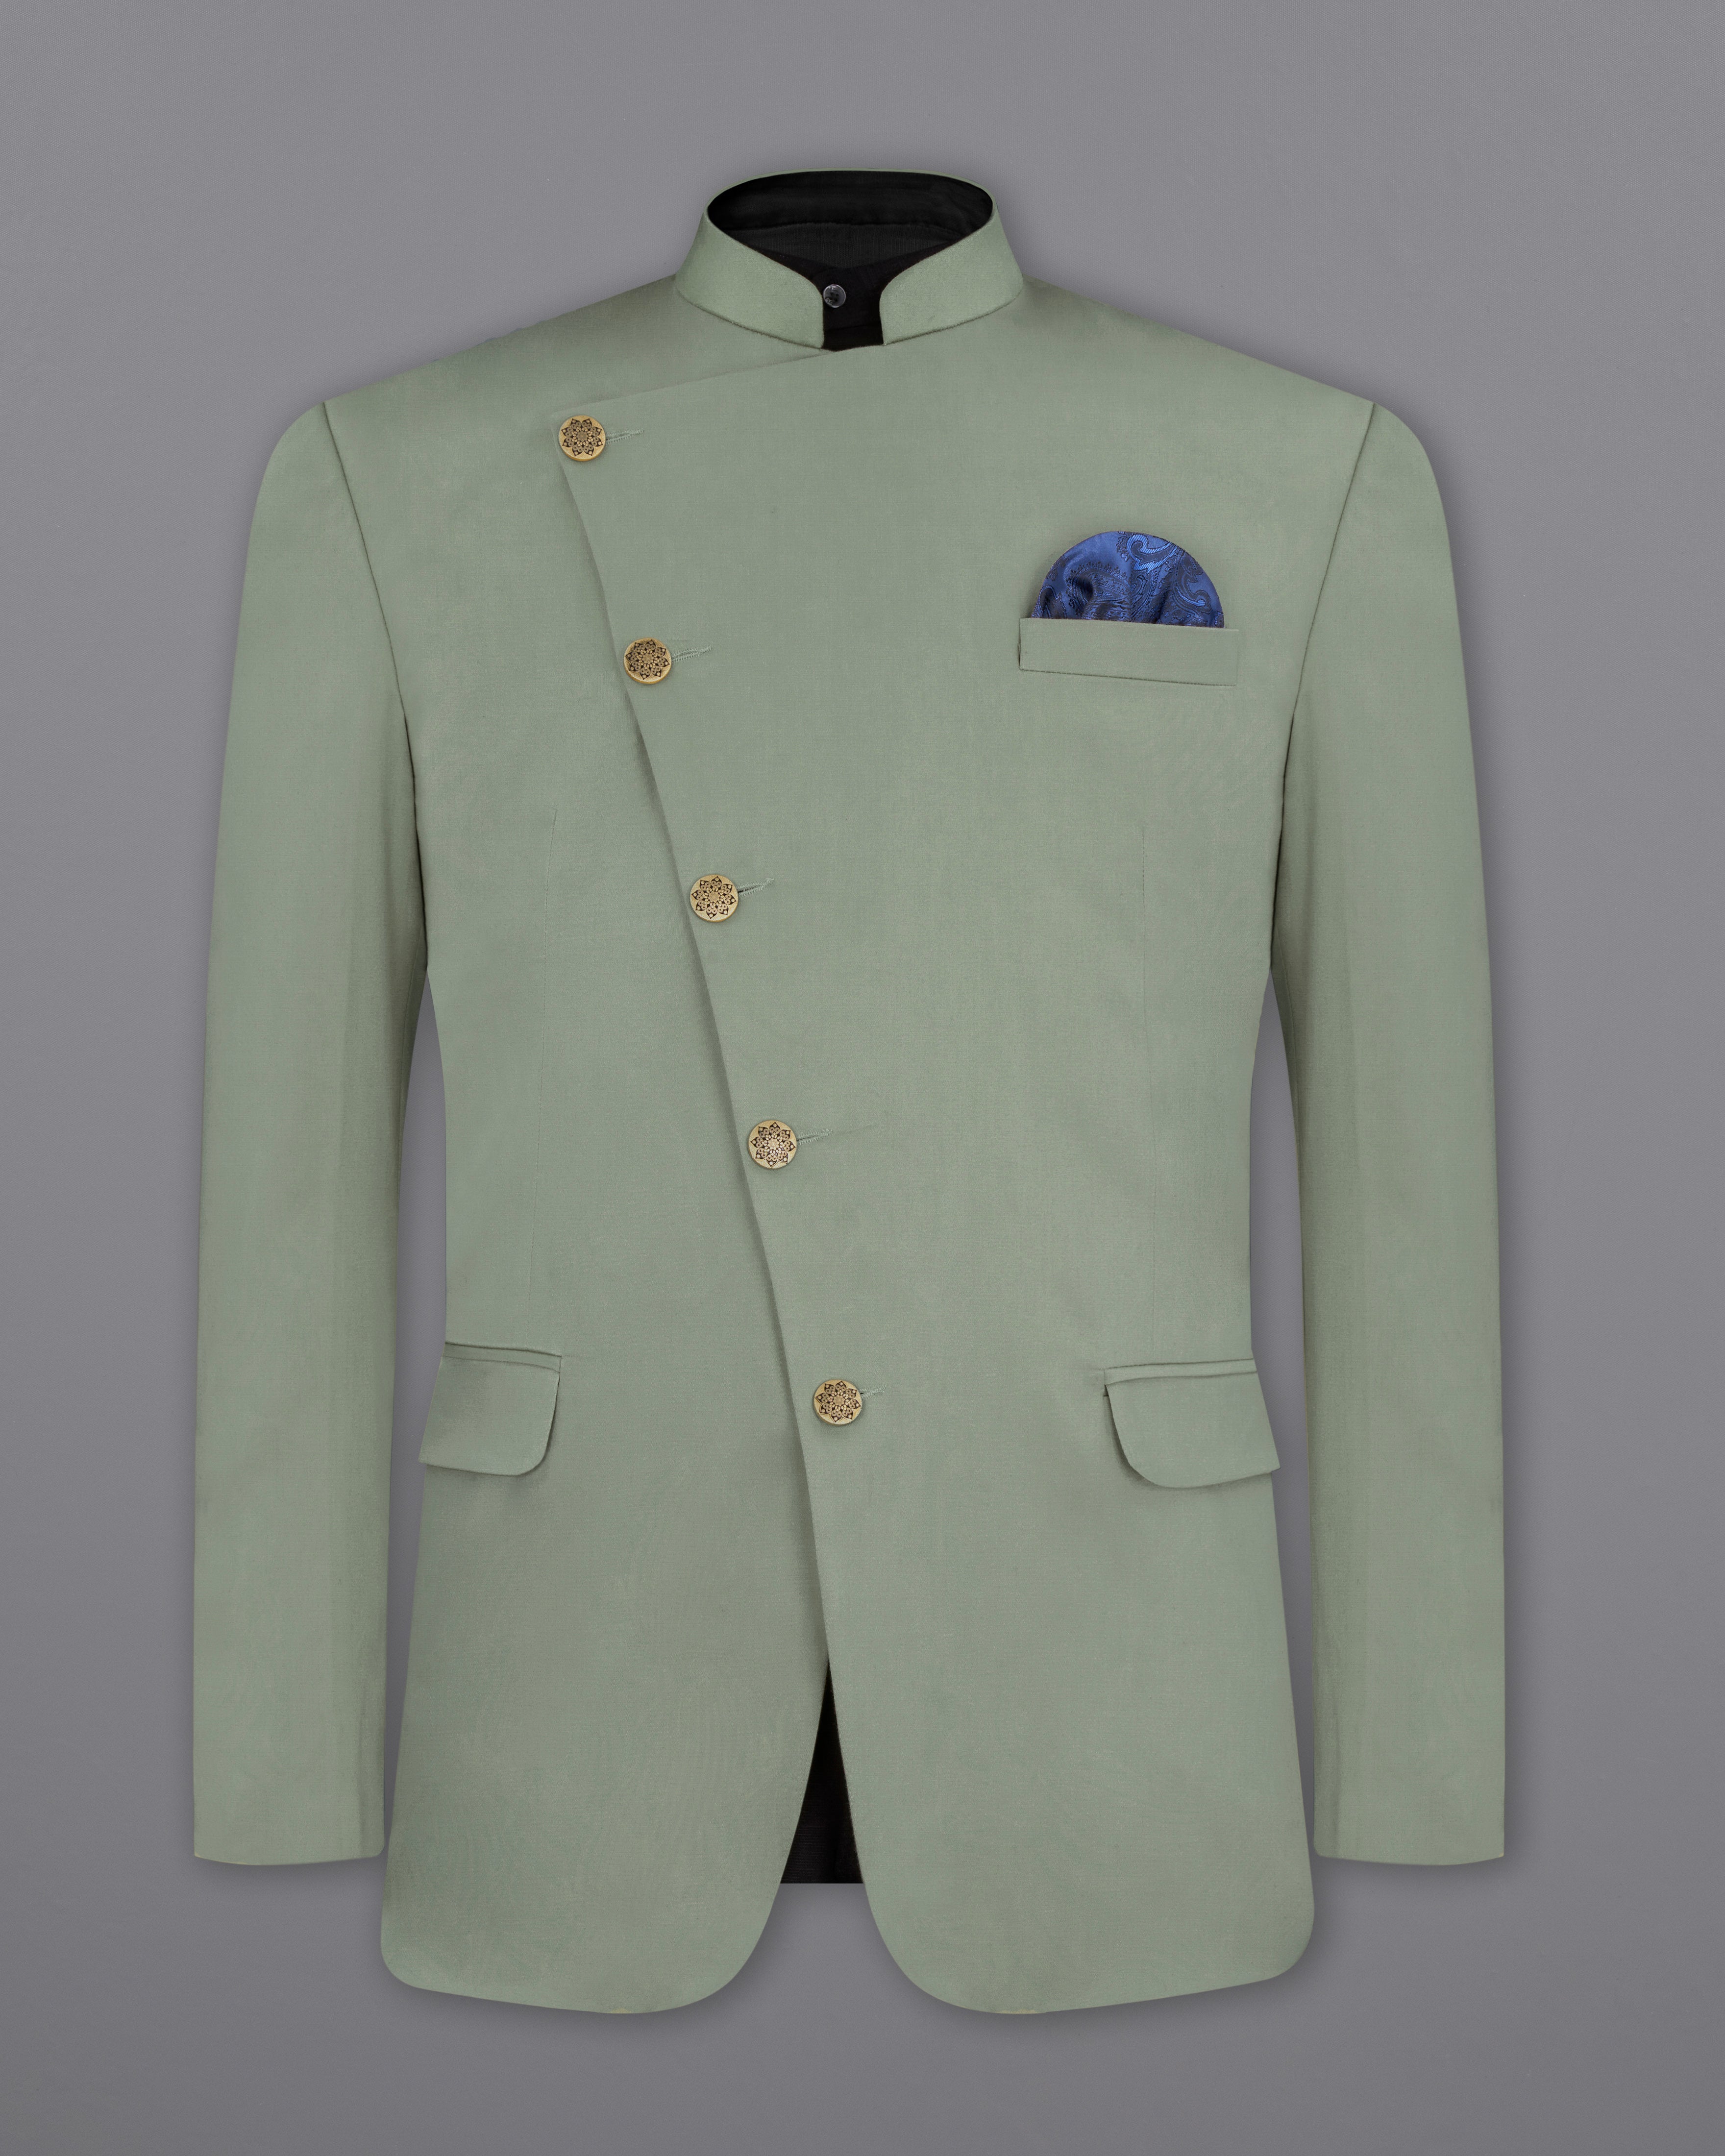 Jute Green Jodhpuri Suit | African wear styles for men, Indian wedding suits  men, Stylish men wear